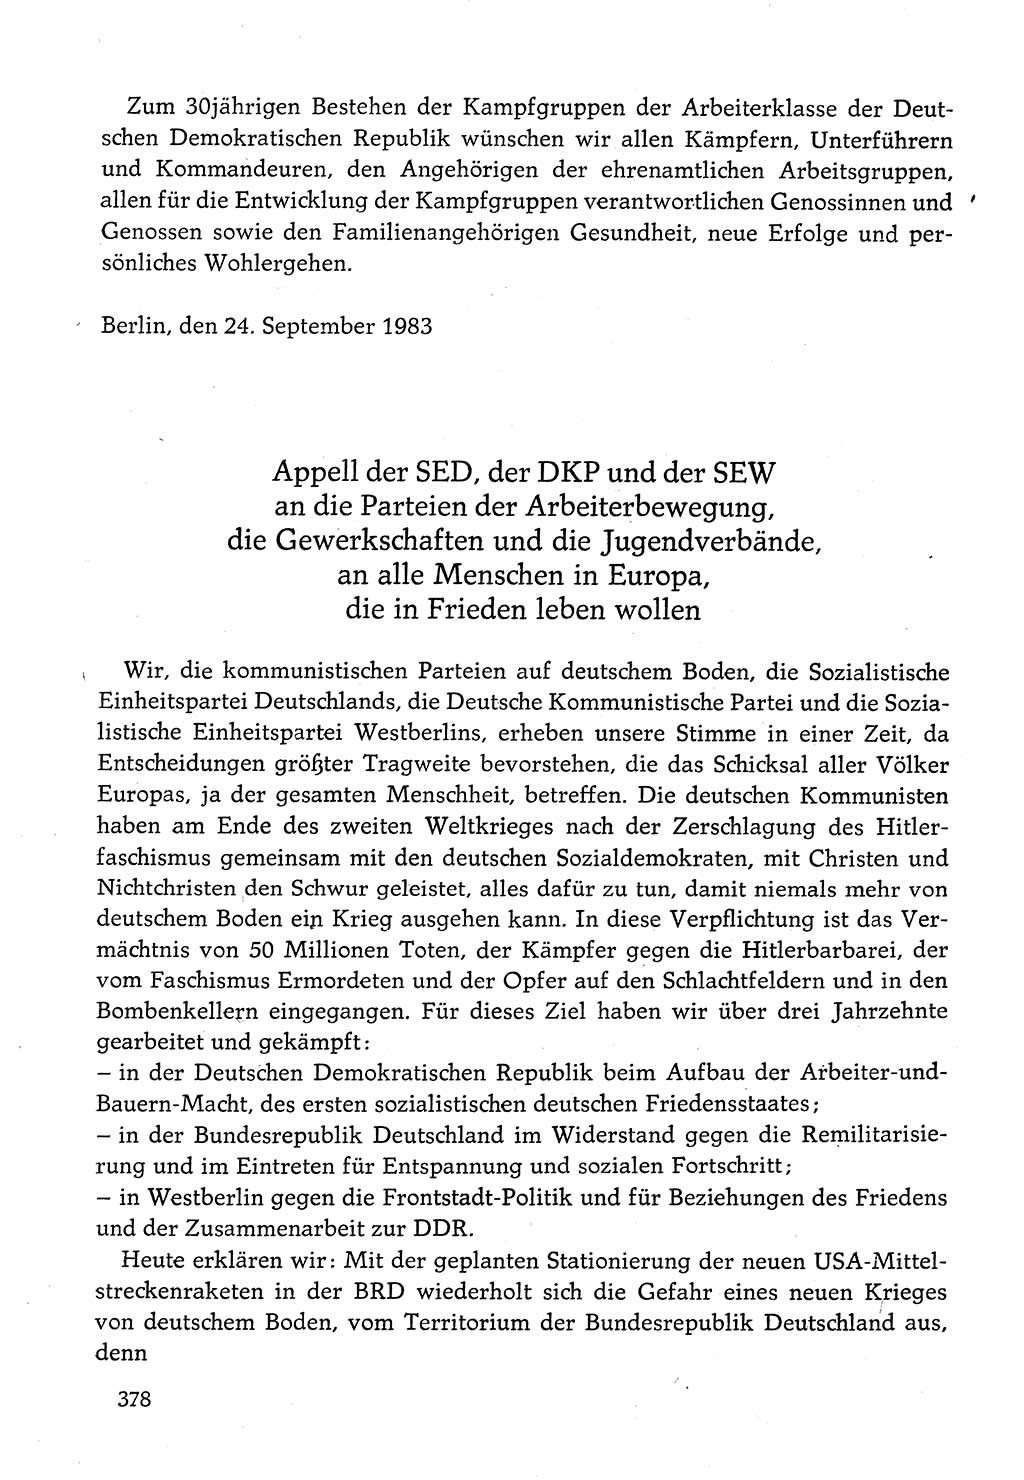 Dokumente der Sozialistischen Einheitspartei Deutschlands (SED) [Deutsche Demokratische Republik (DDR)] 1982-1983, Seite 378 (Dok. SED DDR 1982-1983, S. 378)